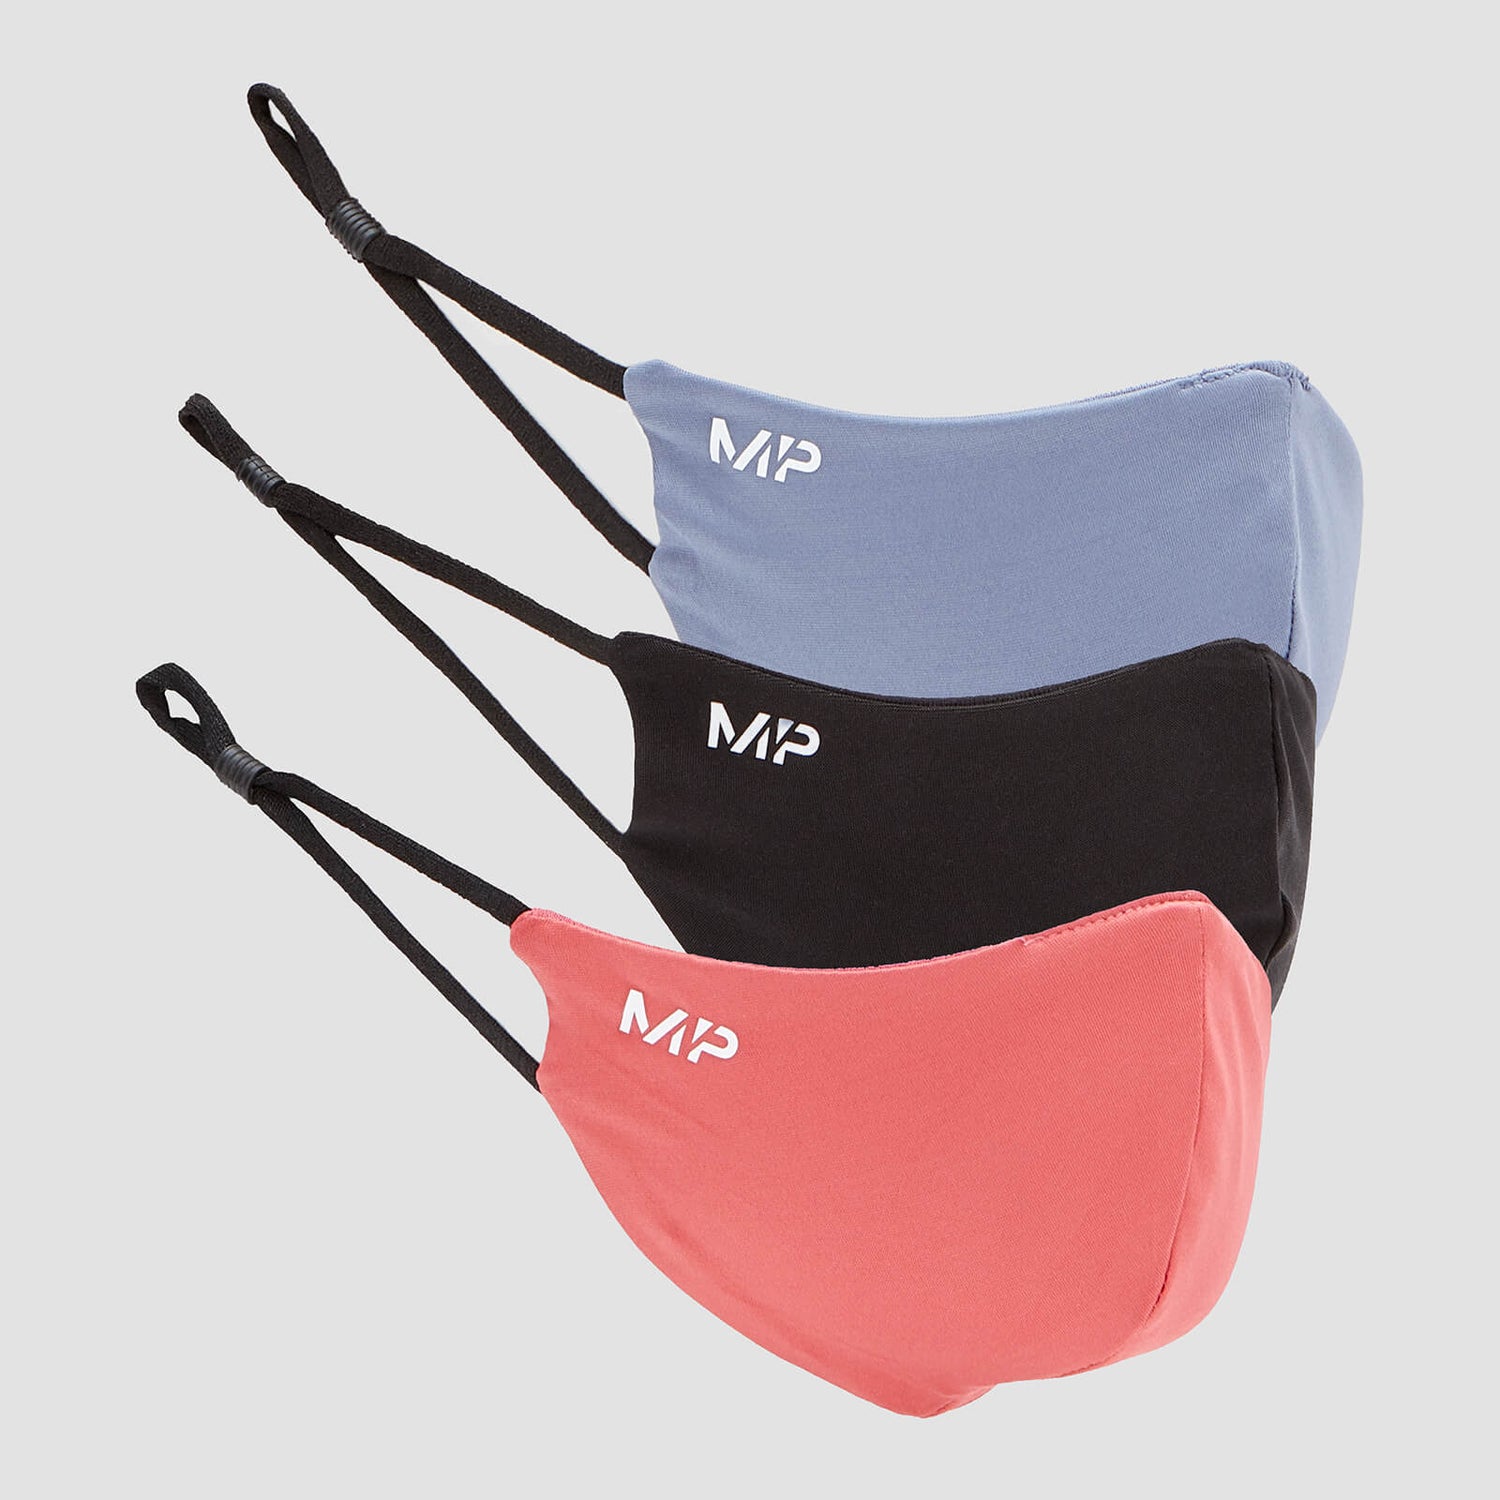 MP masker (3 stuks) - Zwart / Berry Pink / Galaxy